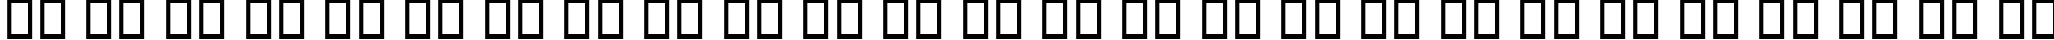 Пример написания английского алфавита шрифтом B Sepideh Outline